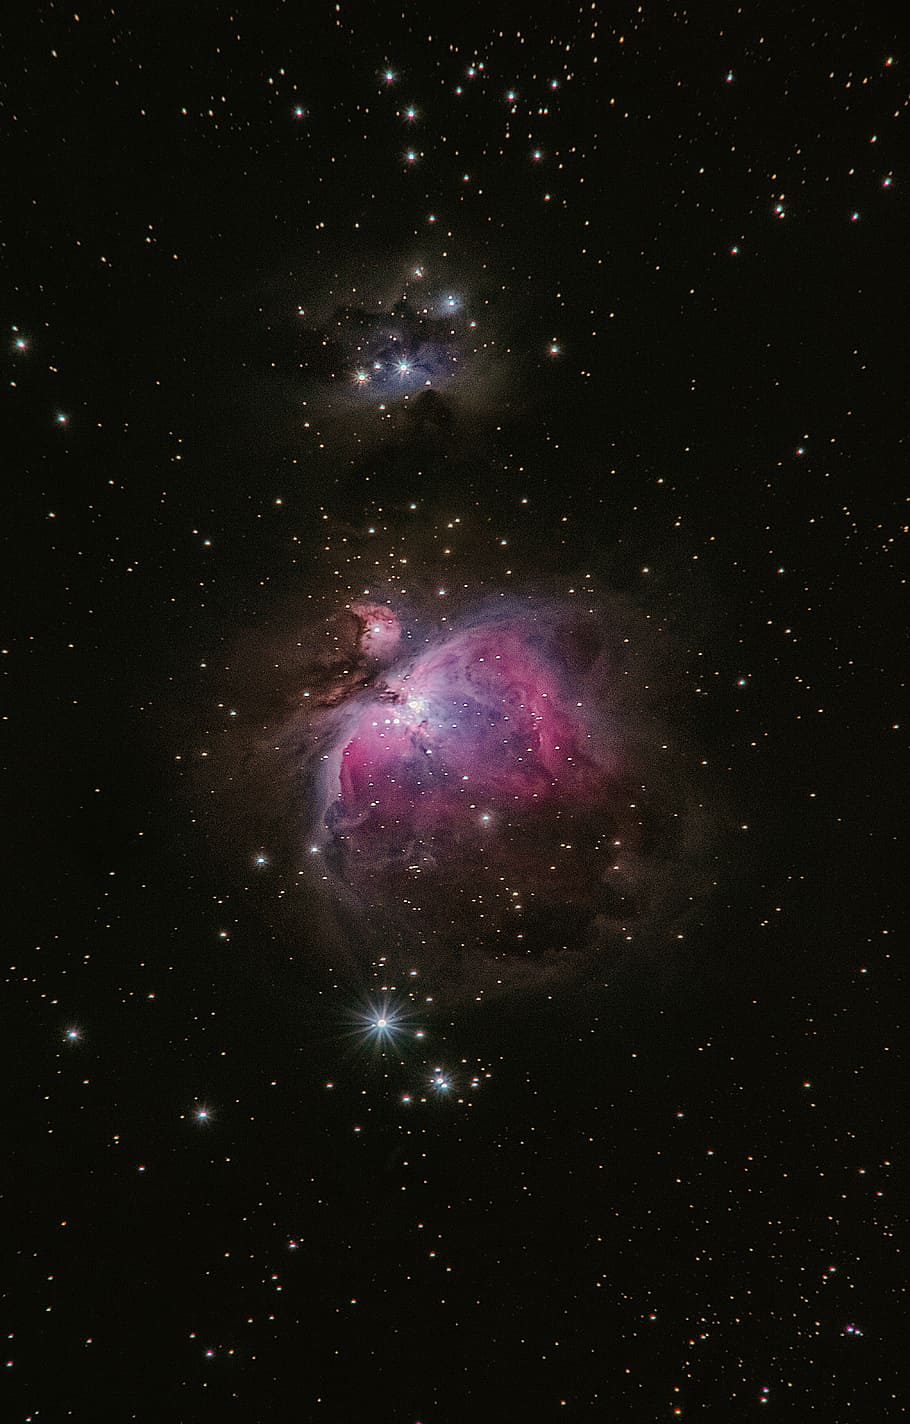 Galaxy Digital Wallpaper, Space, Star, Dust, Dark, - Orion Nebula Celestron 130 - HD Wallpaper 